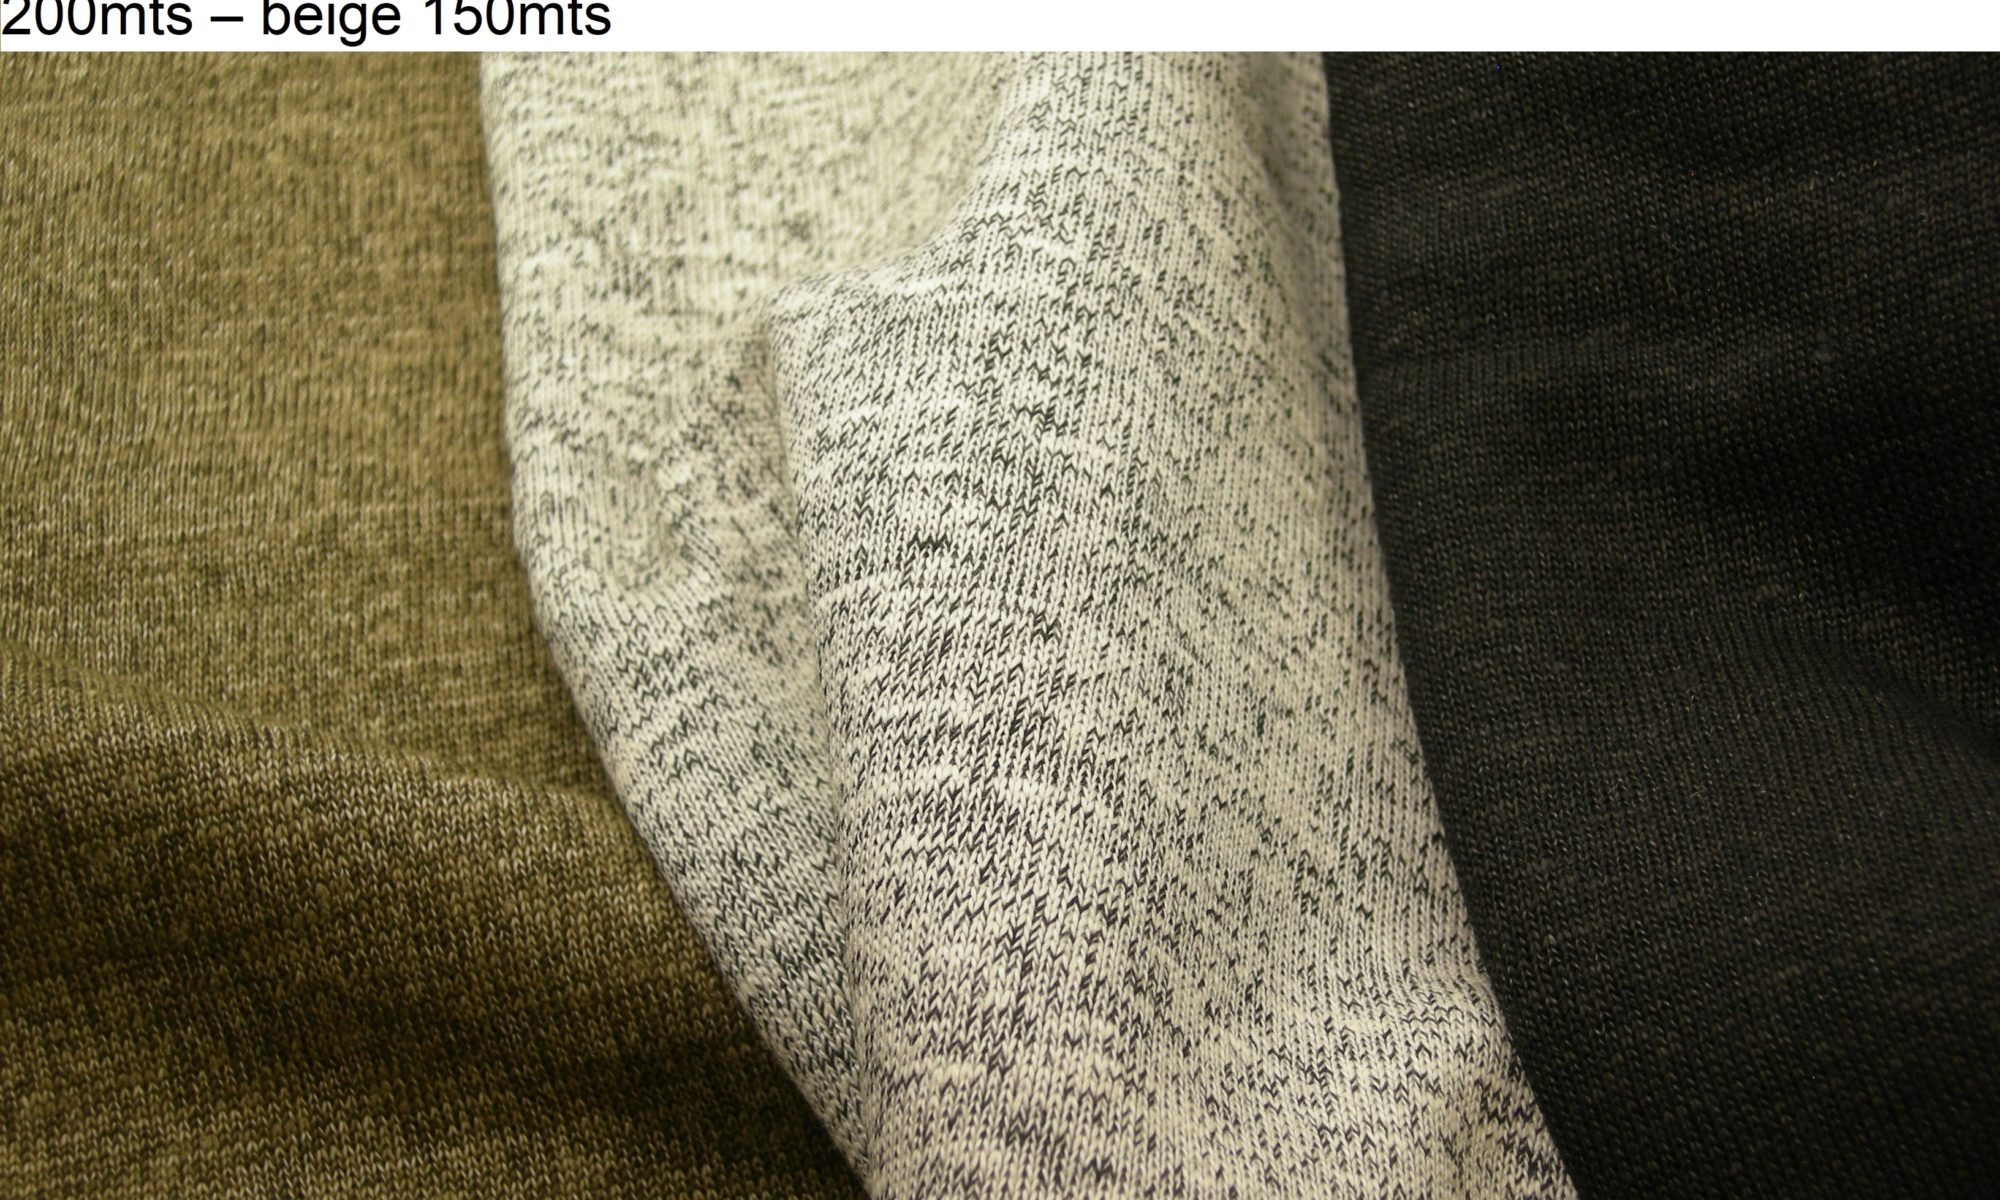 ART 7198 linen blend knit jersey shirt vest jacket fabric WIDTH cm140 WEIGHT gr360 COMPOSITION 65 Linen 35 cotton - Black 200mts – pearl 200mts – beige 150mts